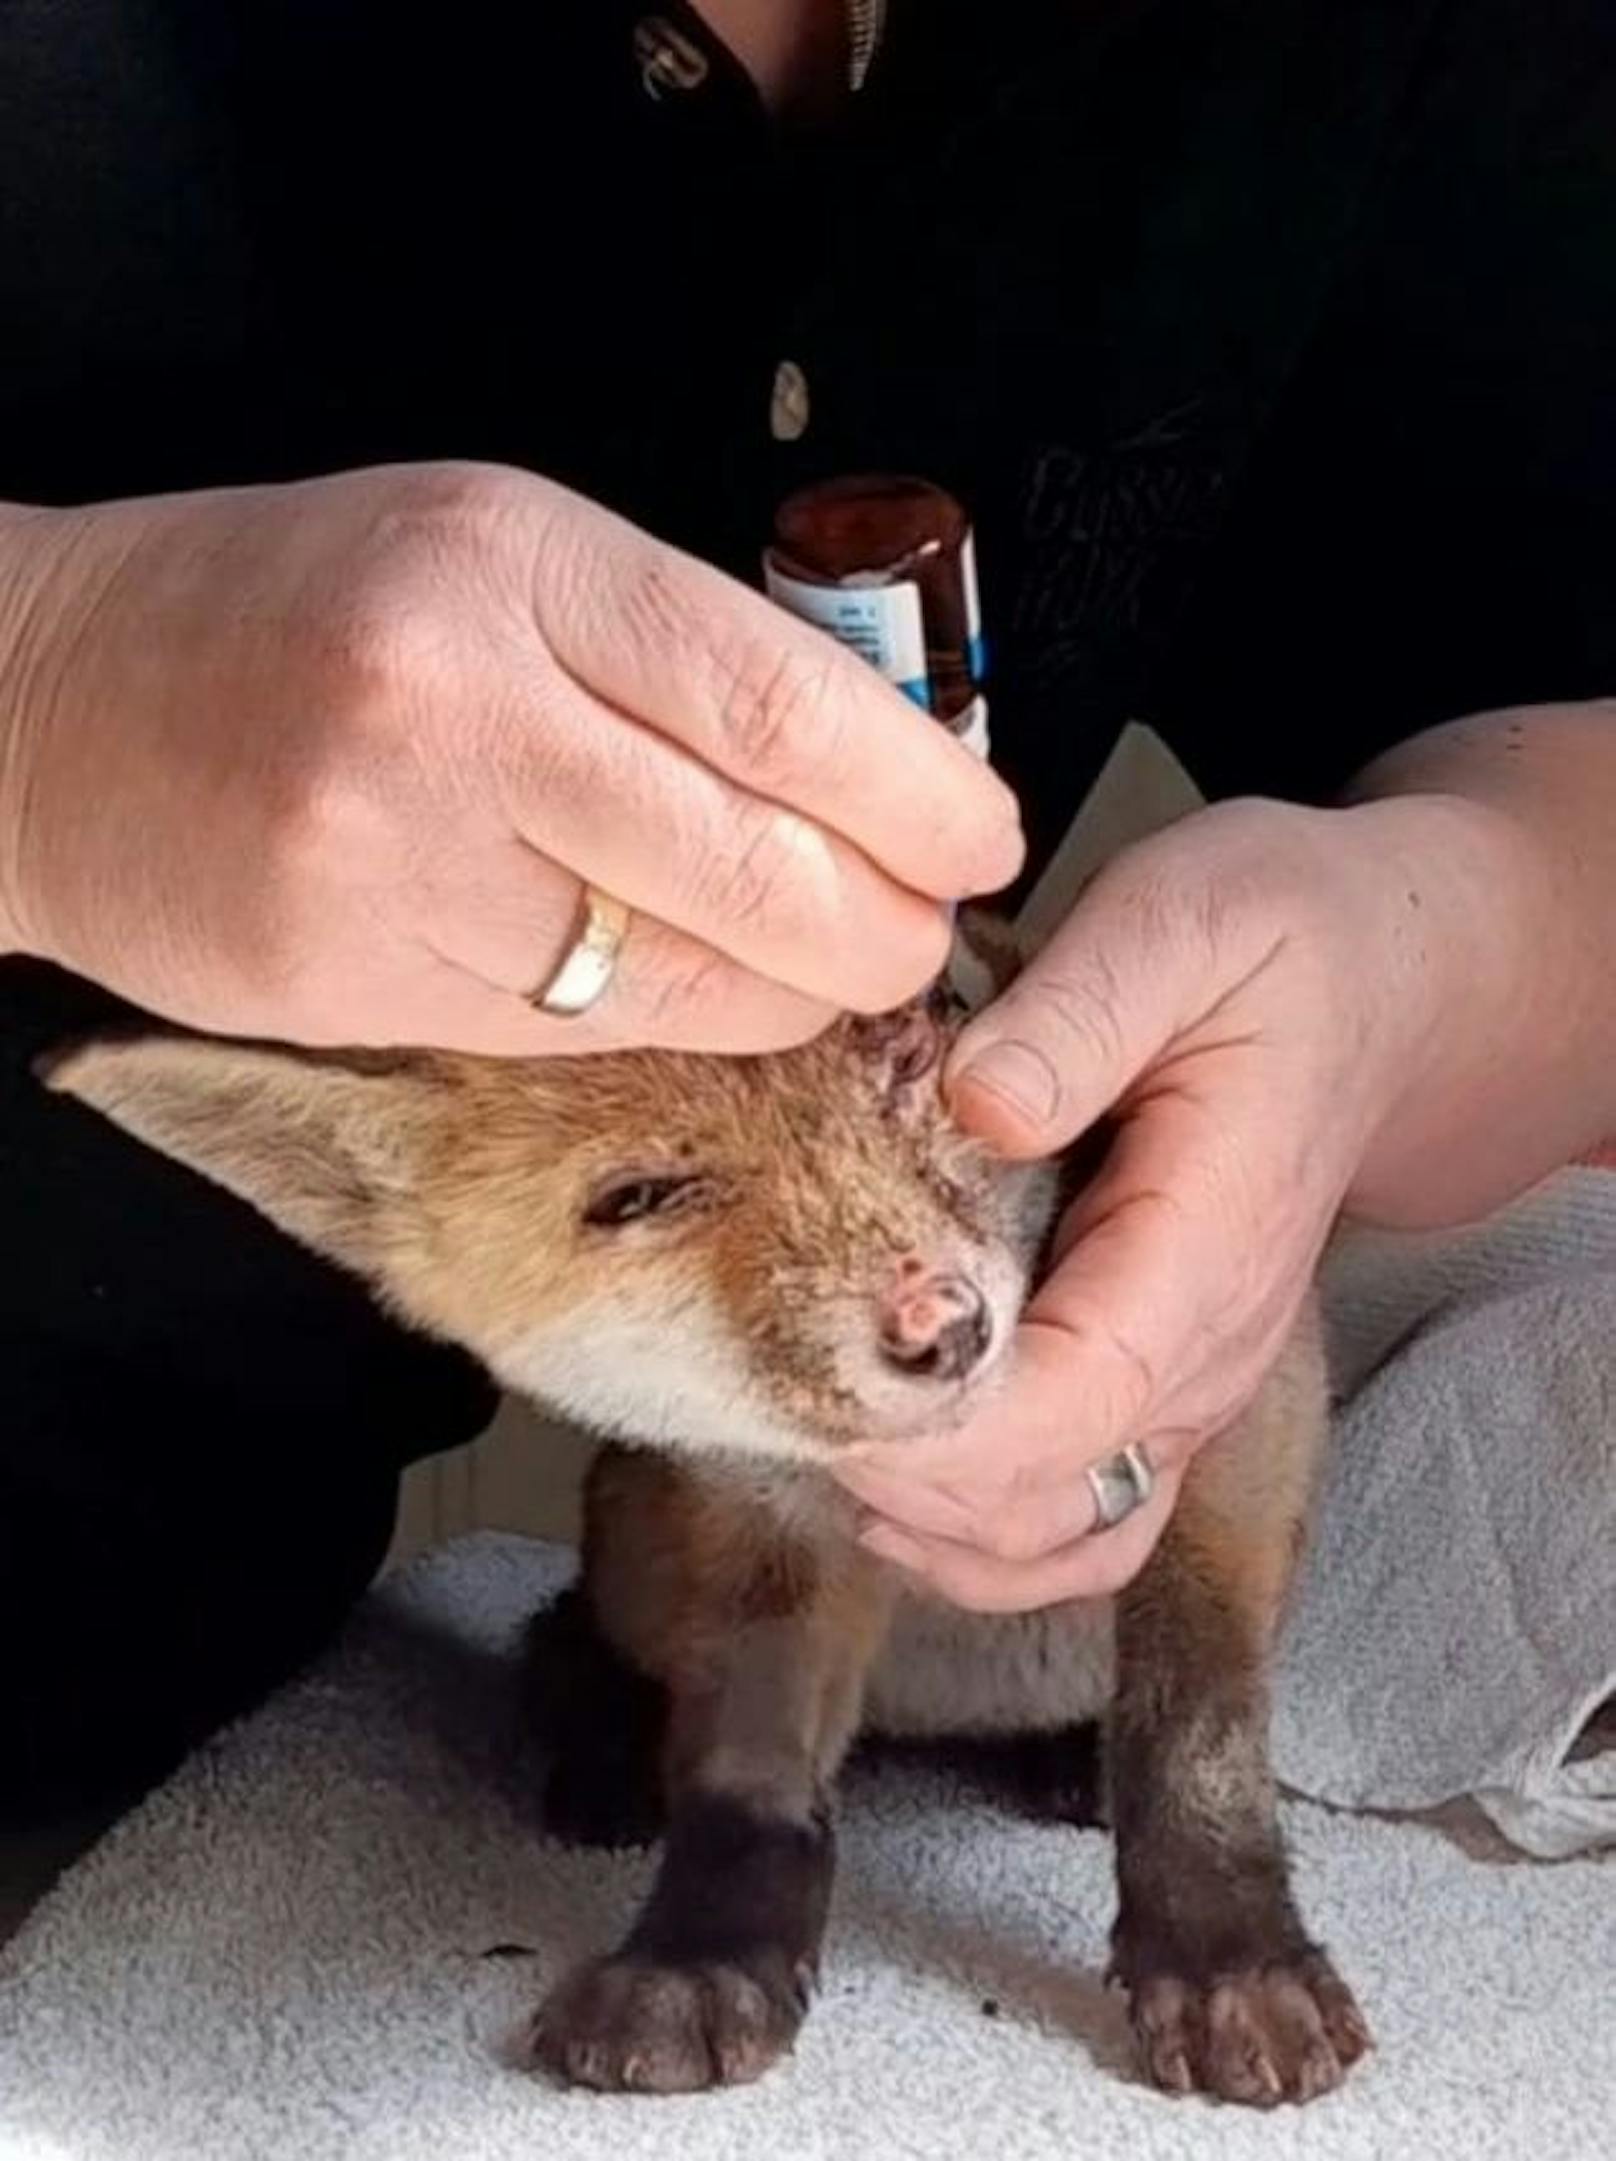 Der kleine Fuchs leidet still und lässt die Behandlungen stumm über sich ergehen. 